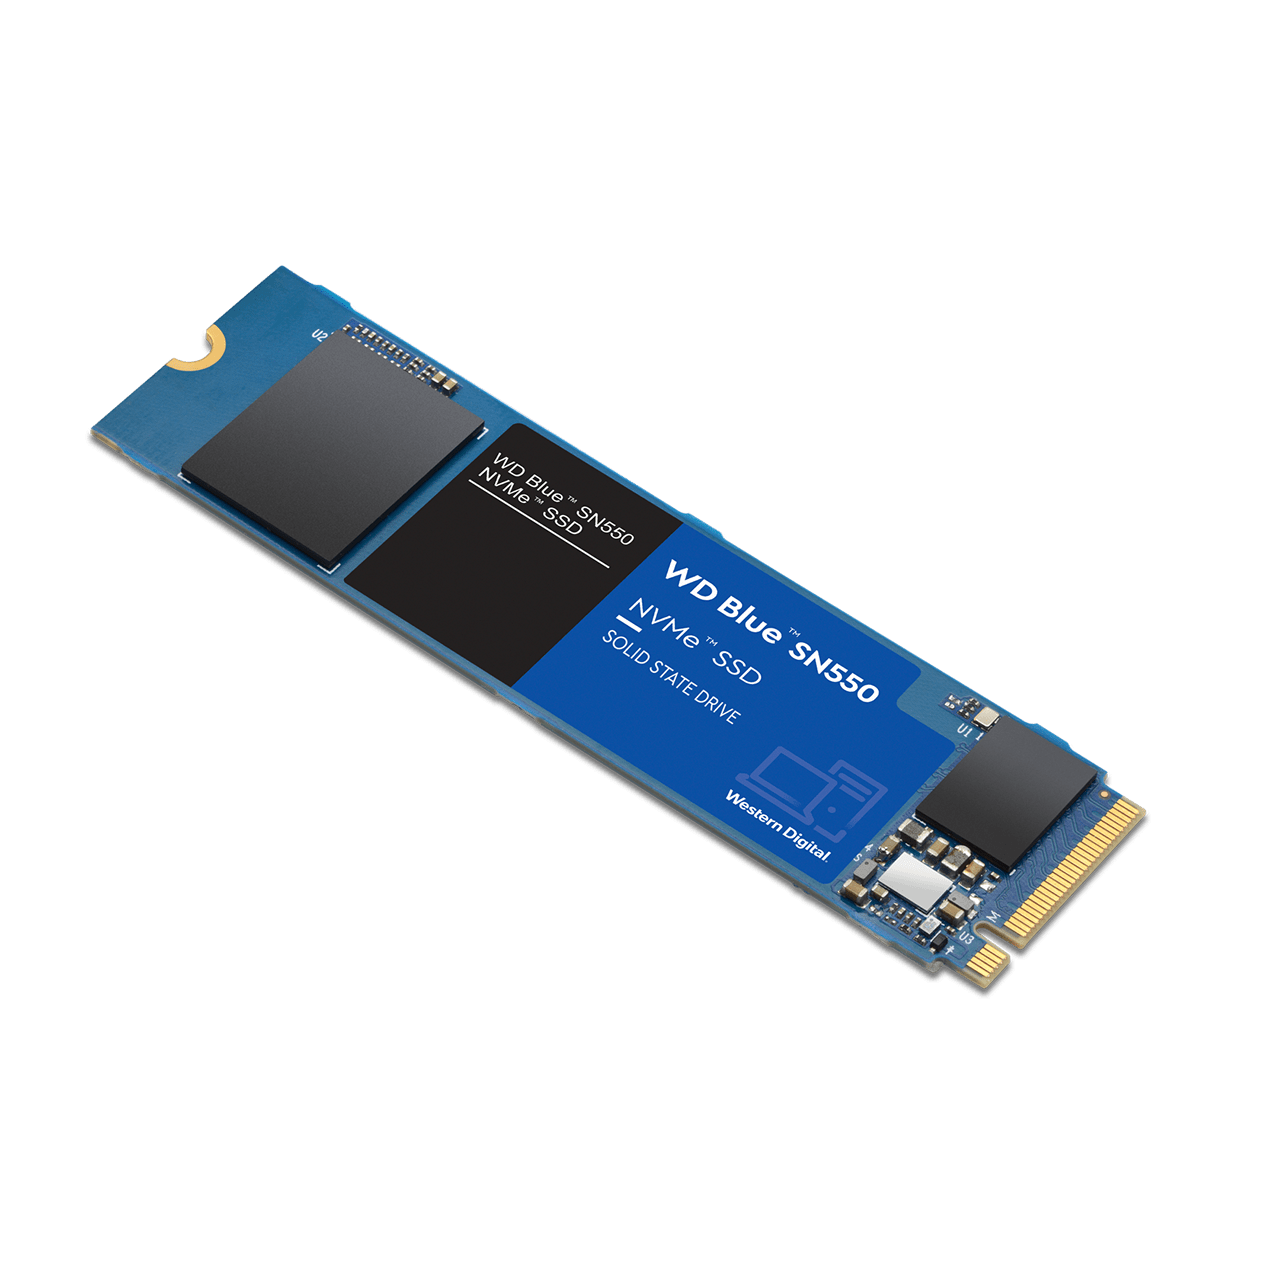 WD Blue SN550 NVMe SSD's: 500GB $52.50, 2TB $168.75 + free s/h at WD